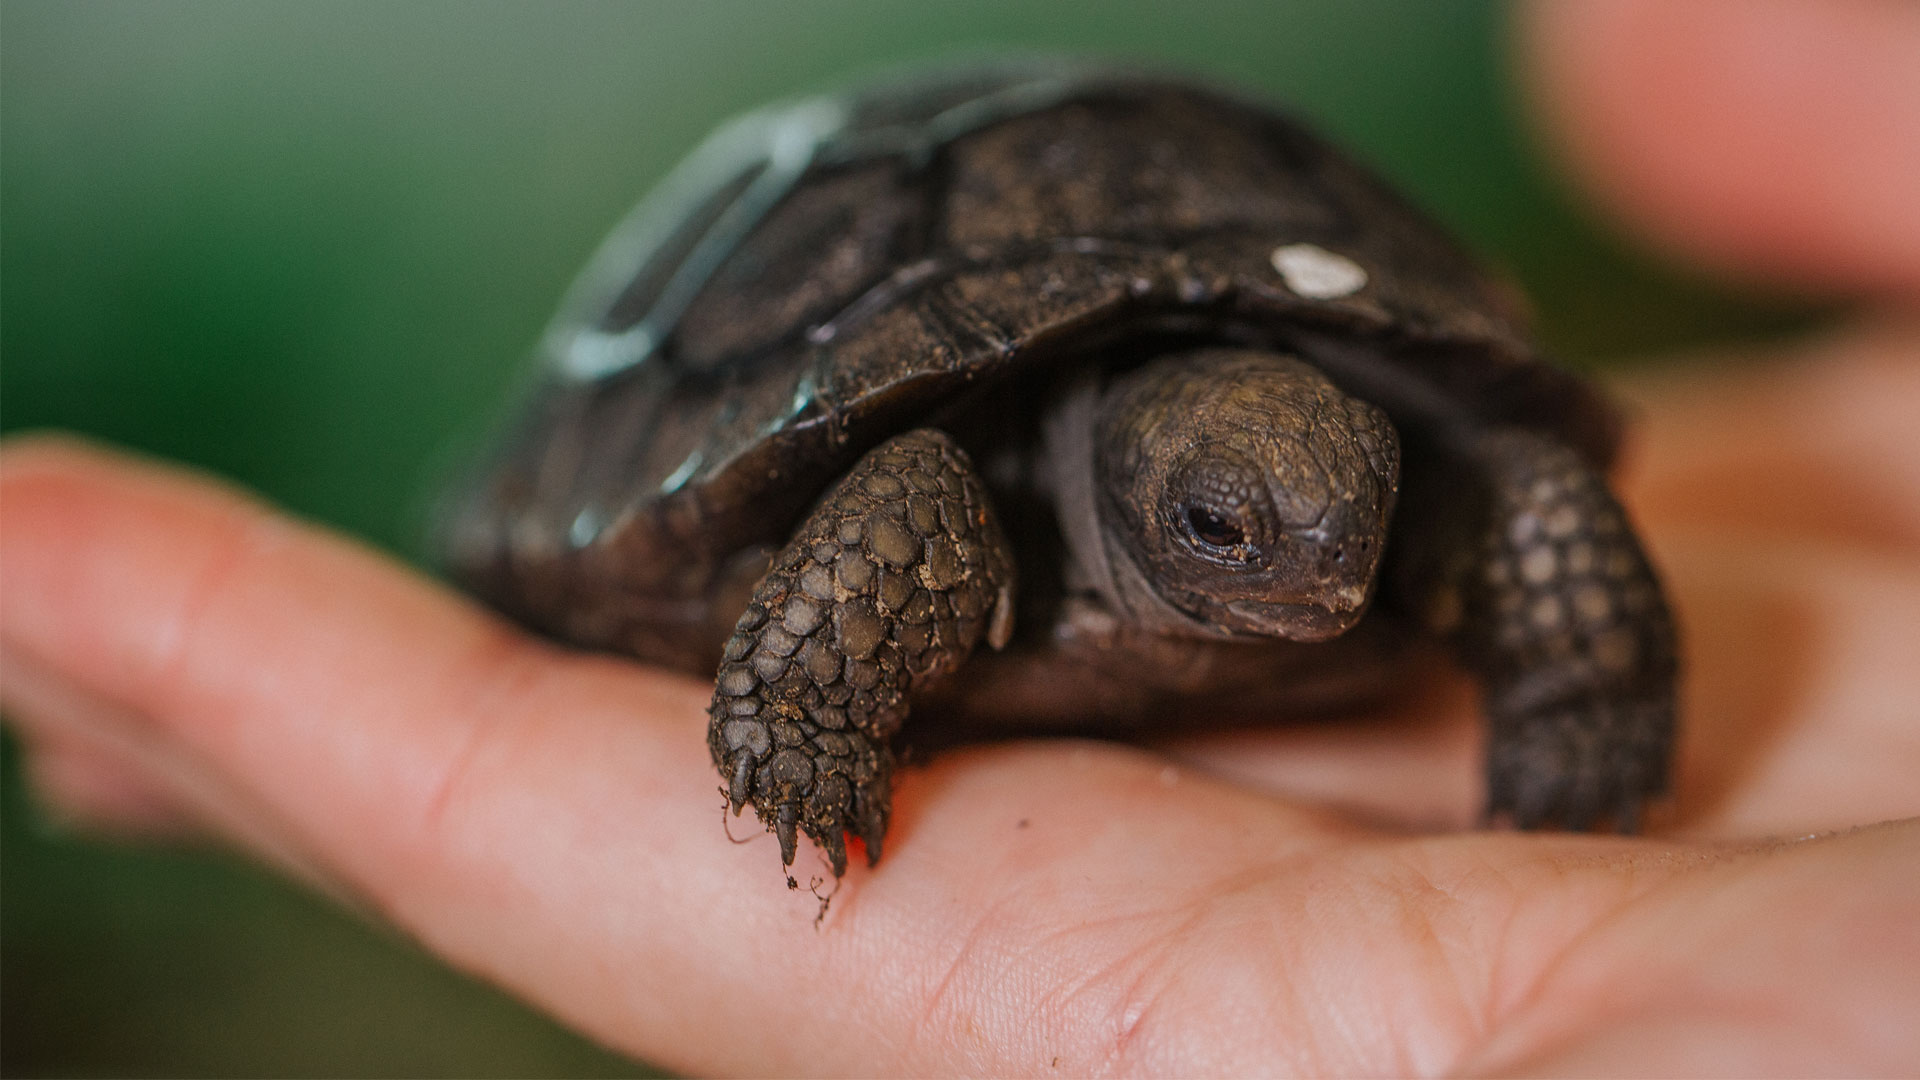 https://rfacdn.nz/zoo/assets/media/galapagos-tortoise-hatchlings-gallery-13.jpg